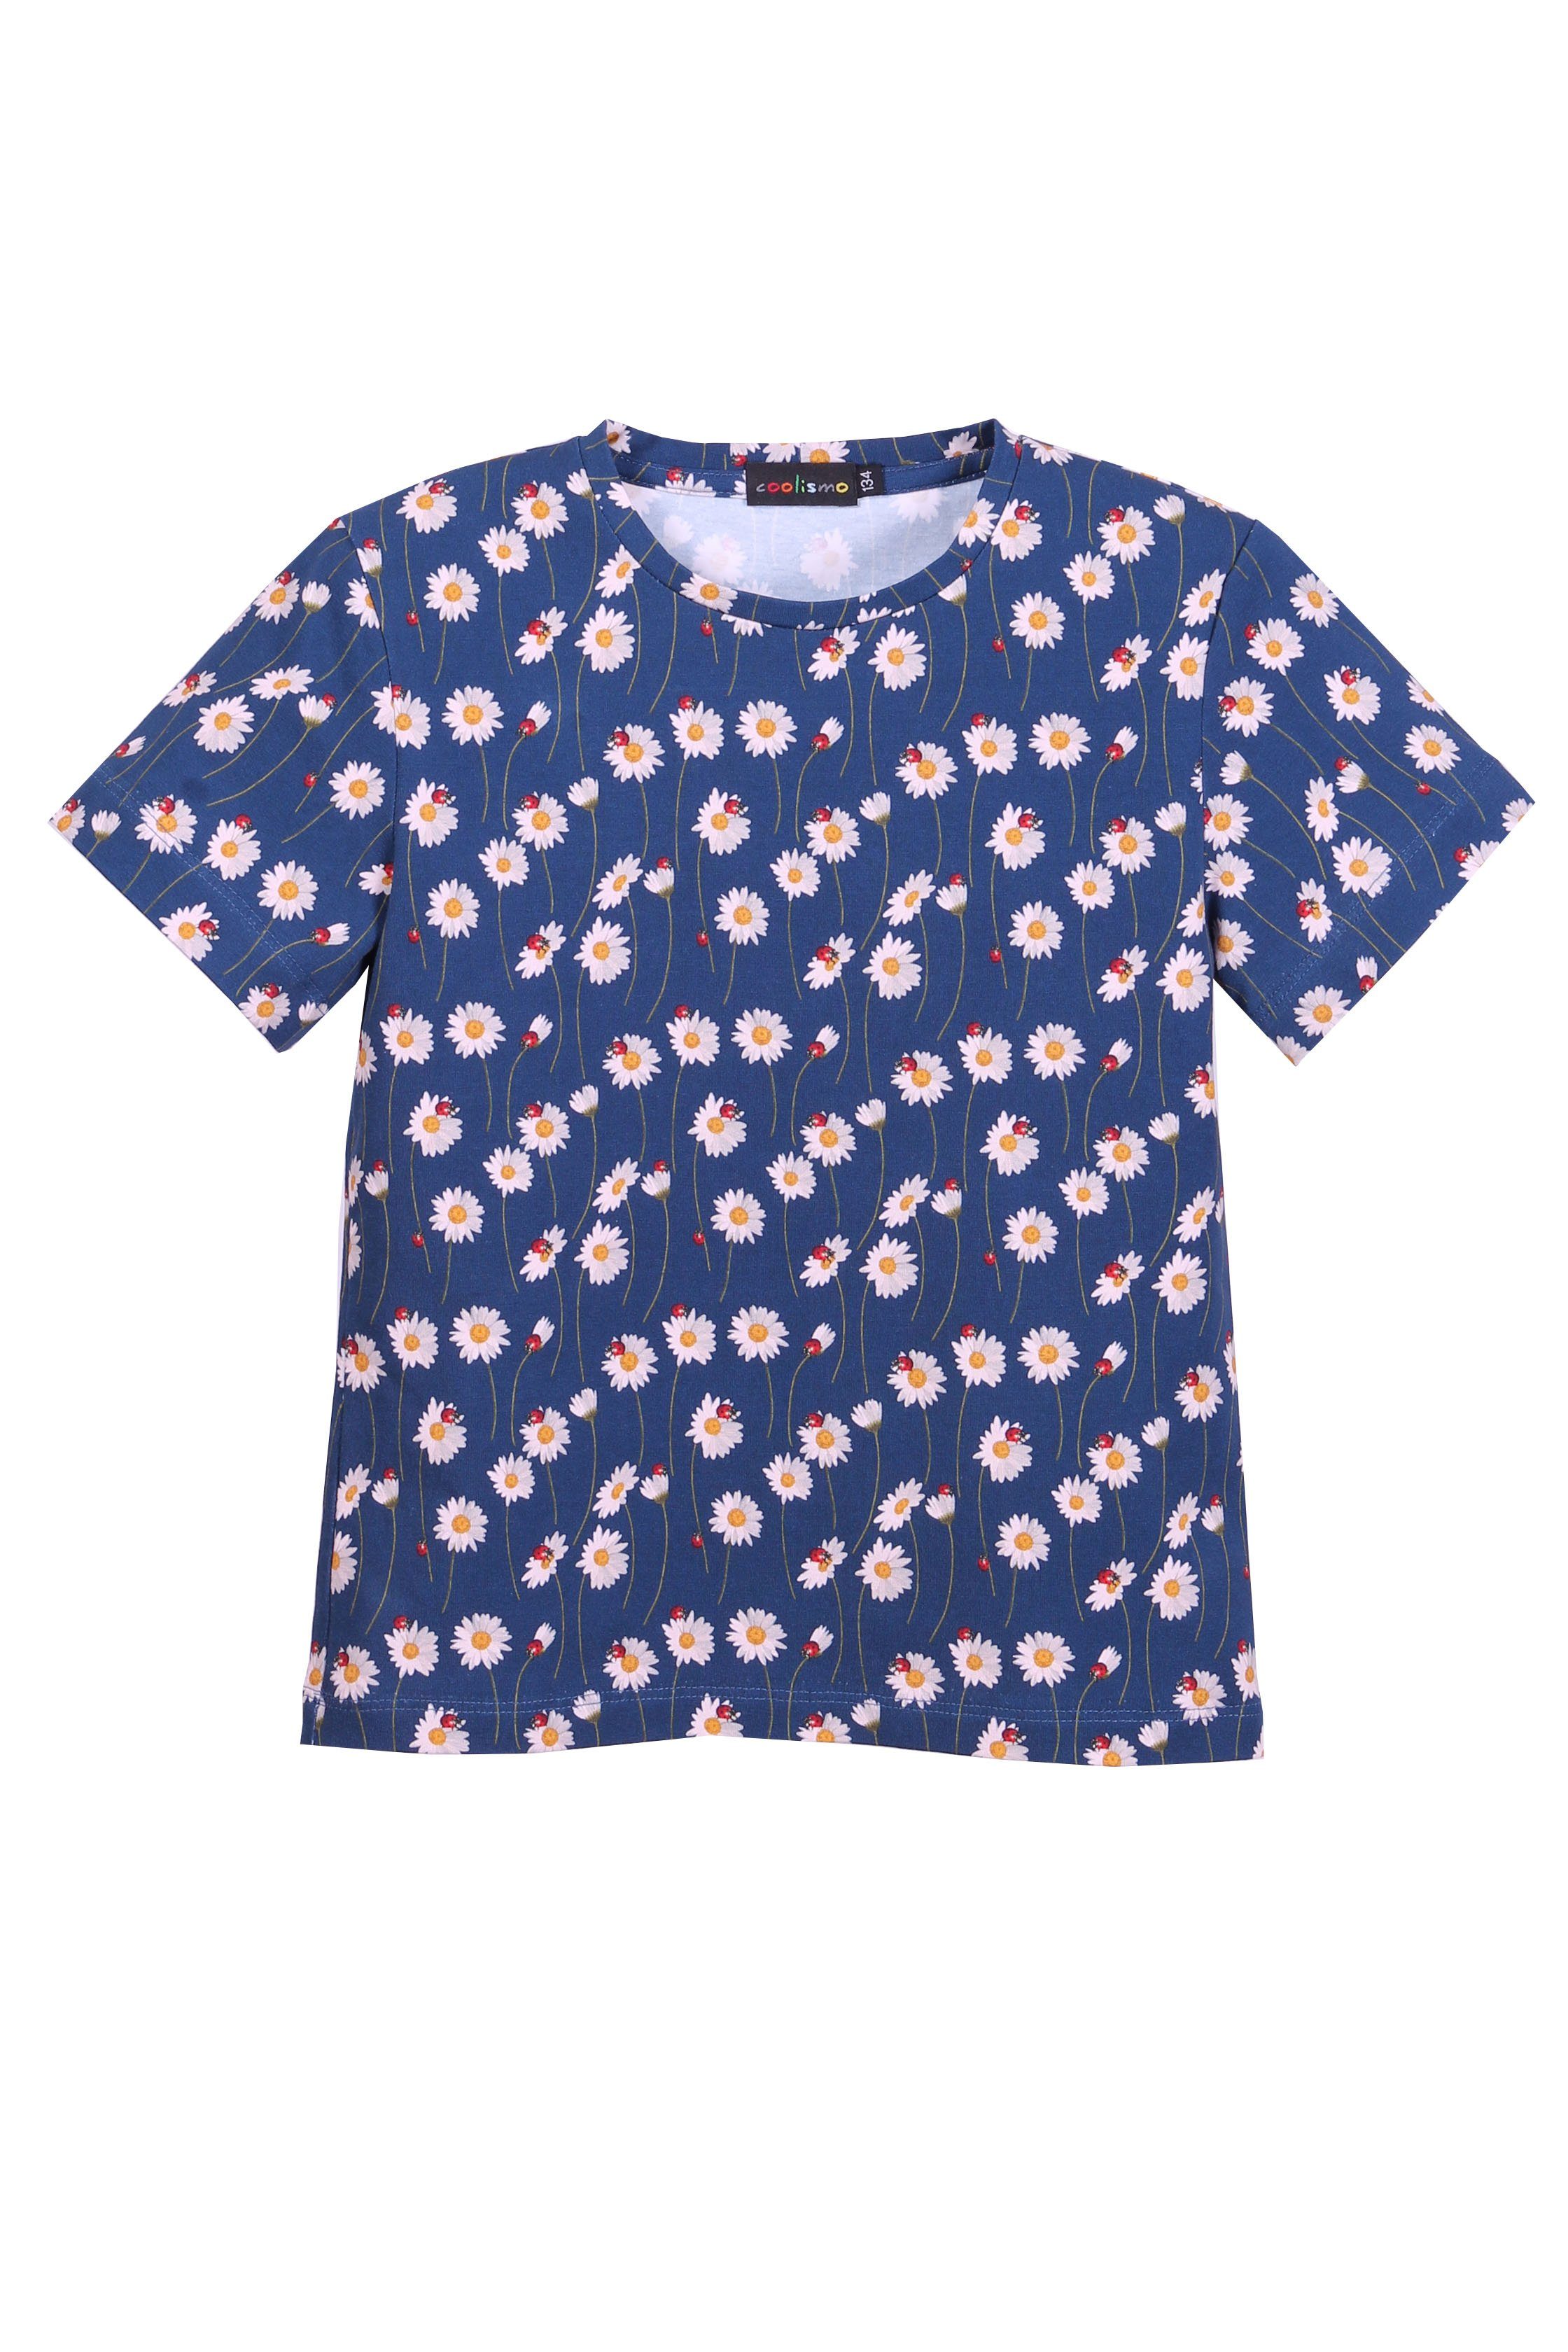 coolismo T-Shirt Print-Shirt für Mädchen Baumwolle Gänseblümchen Alloverprint, Rundhalsausschnitt, mit